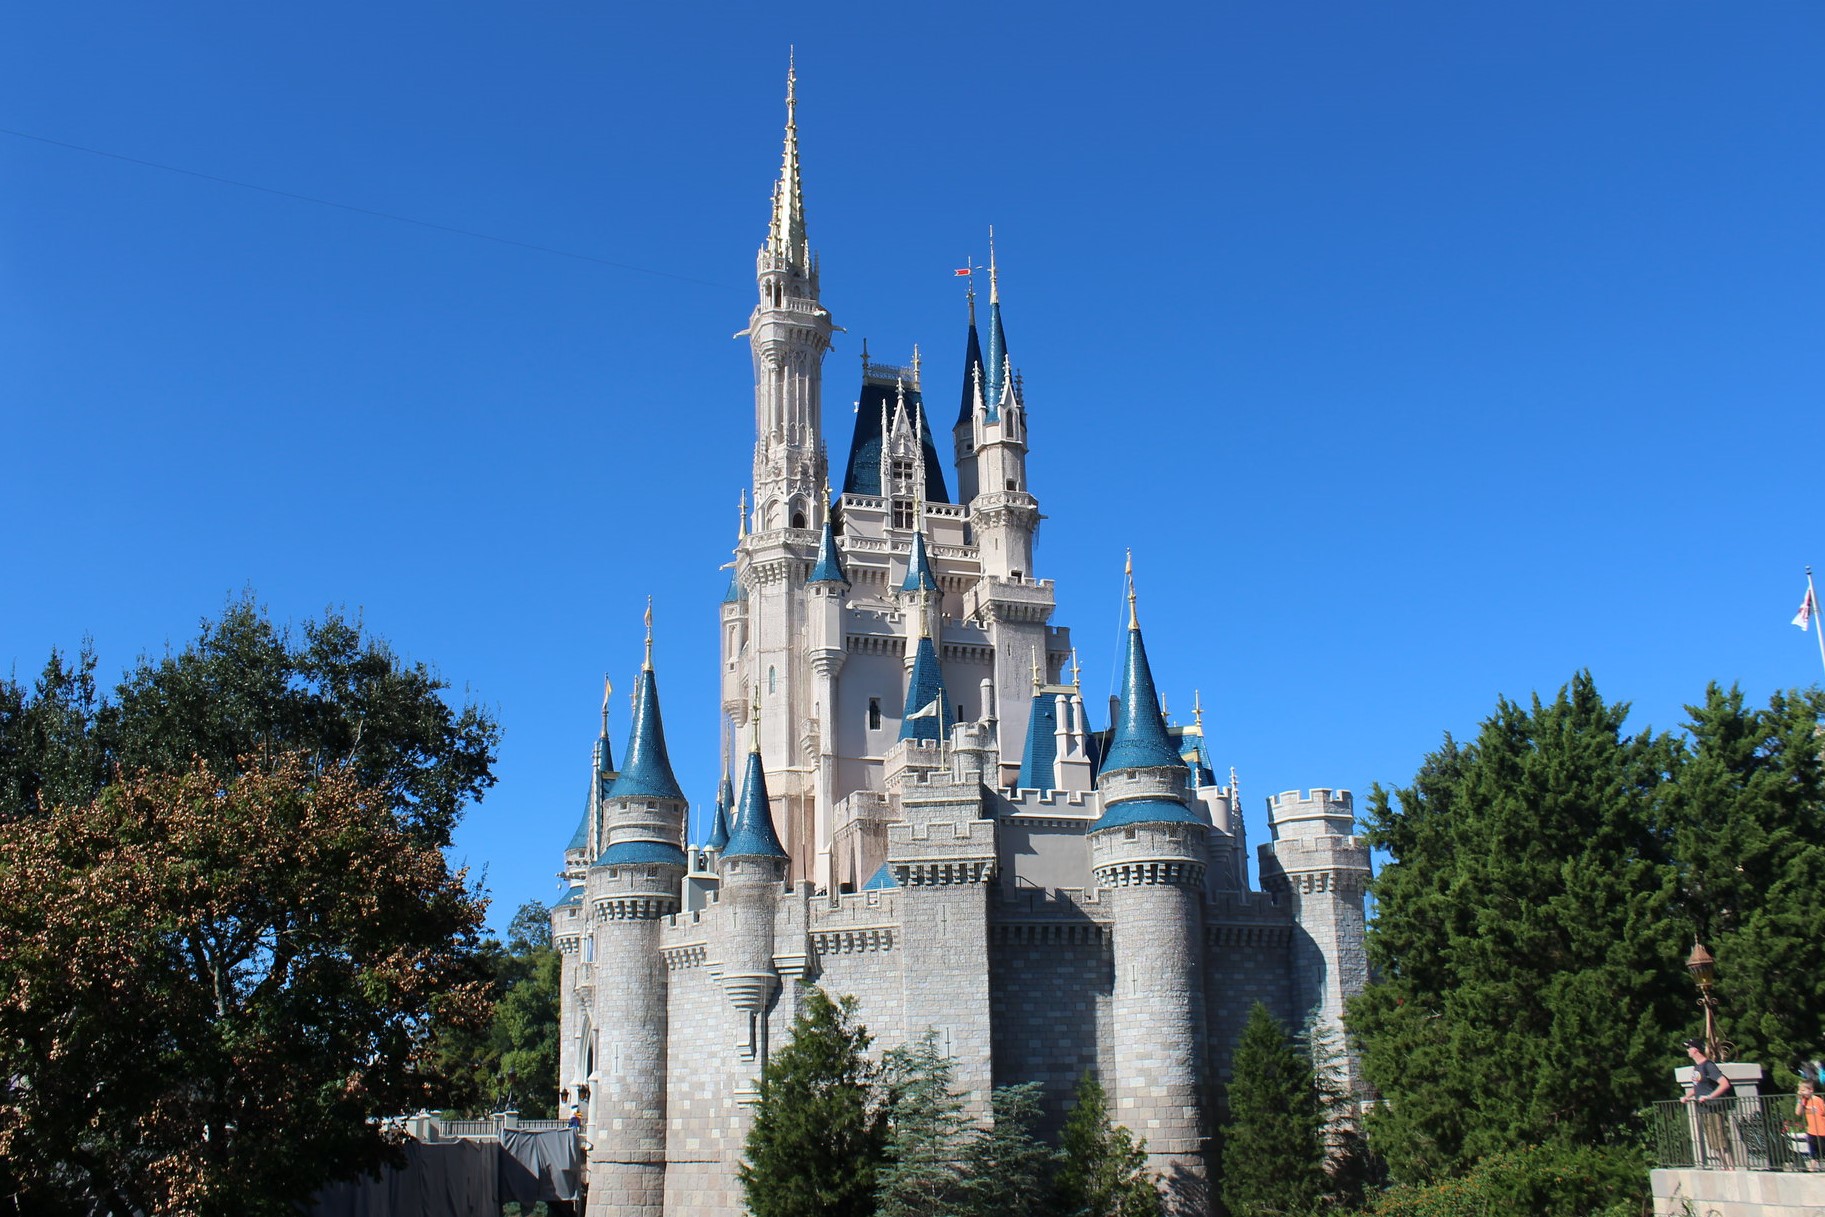 Magic Kingdom Castle